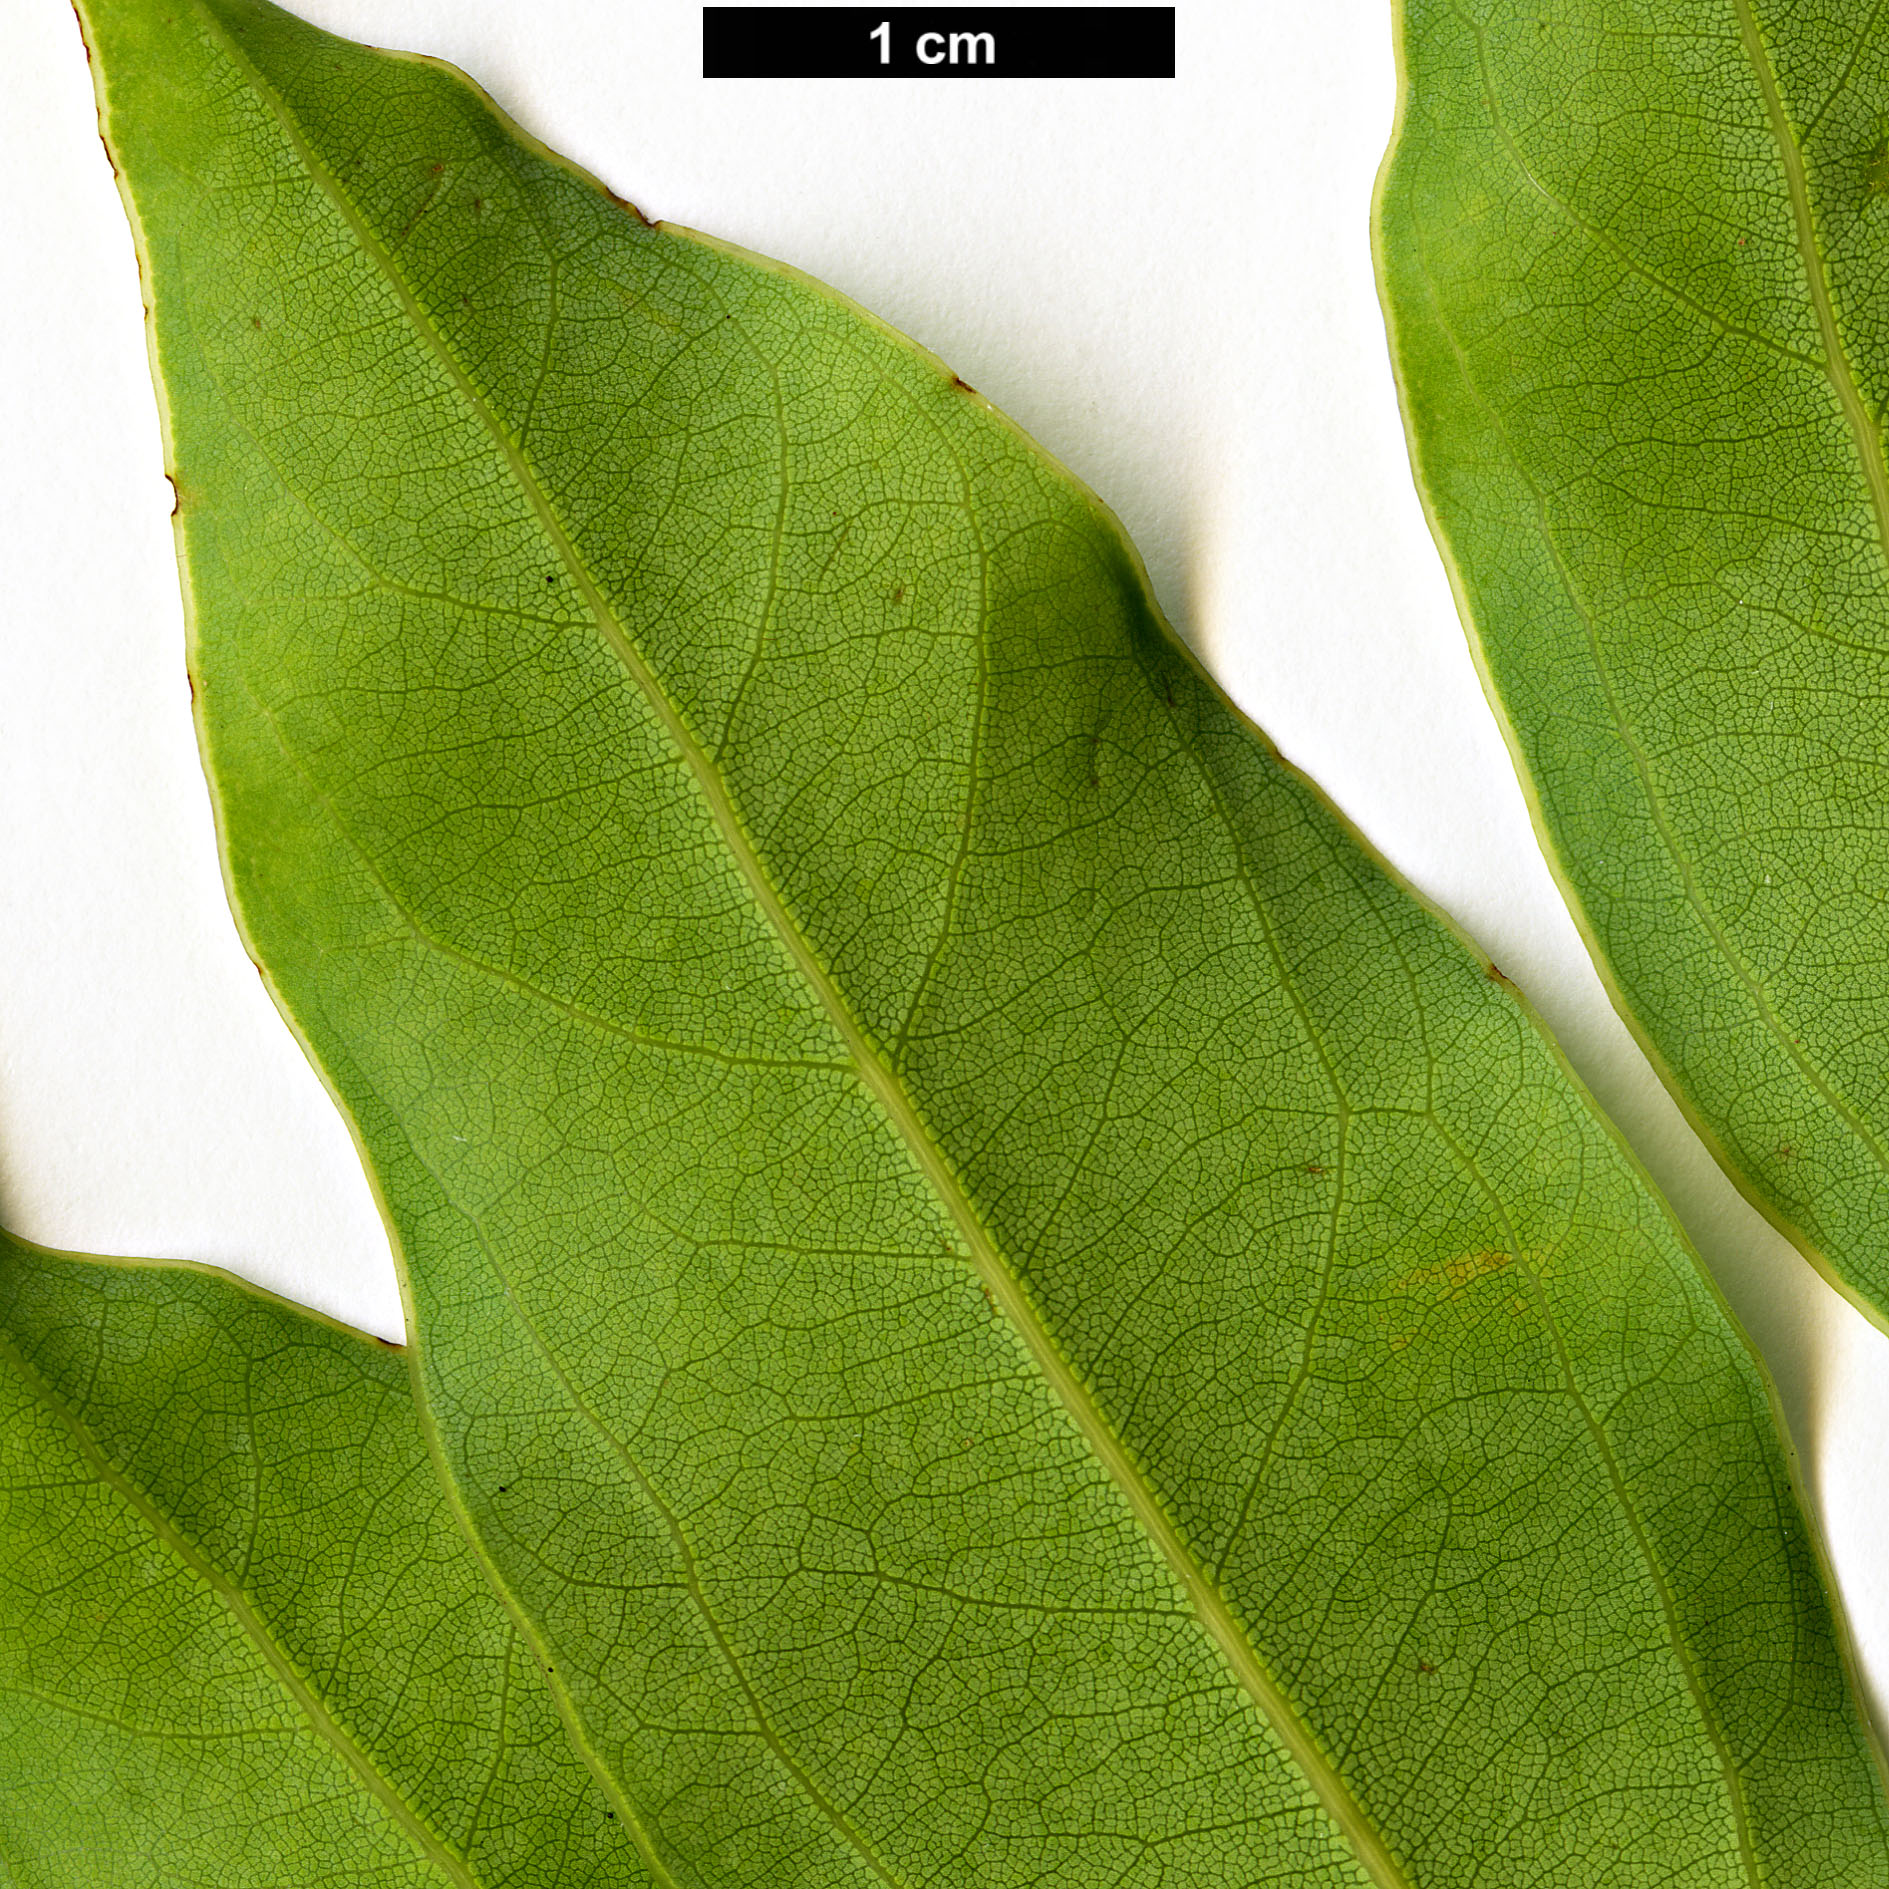 High resolution image: Family: Lauraceae - Genus: Cinnamomum - Taxon: insularimontanum